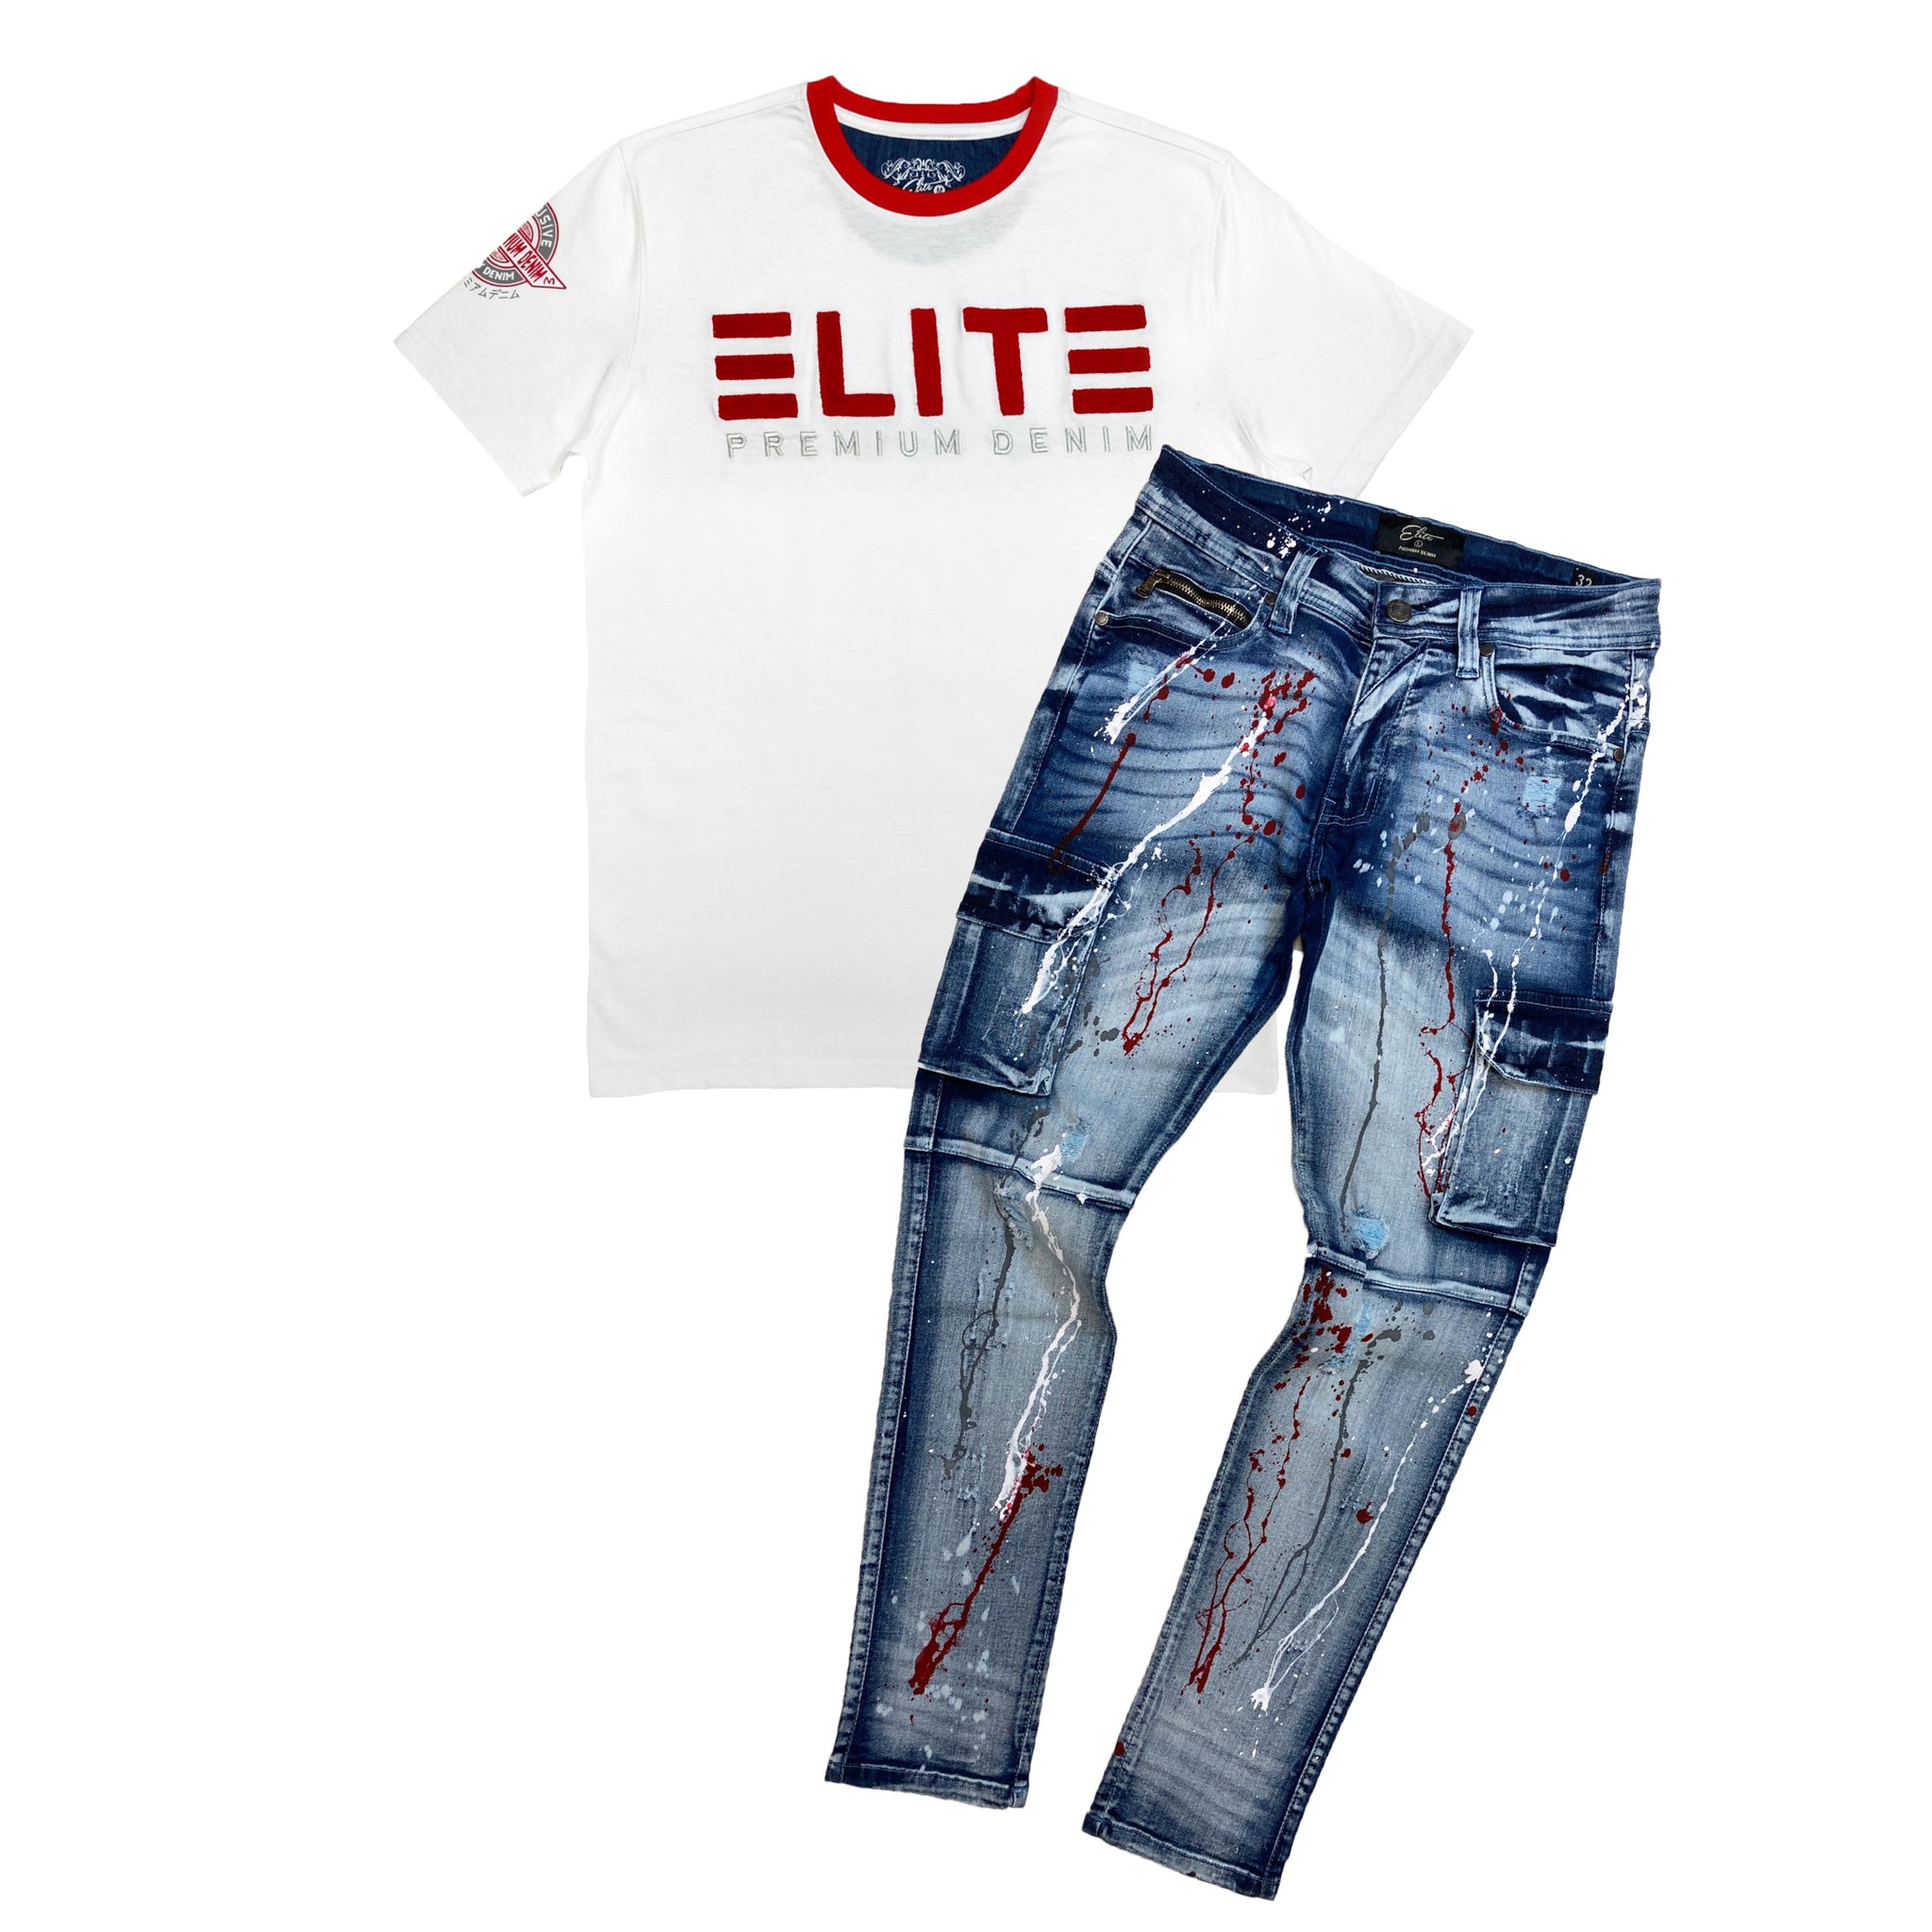 Flint Men's Premium Patch T-shirt - Elite Premium Denim